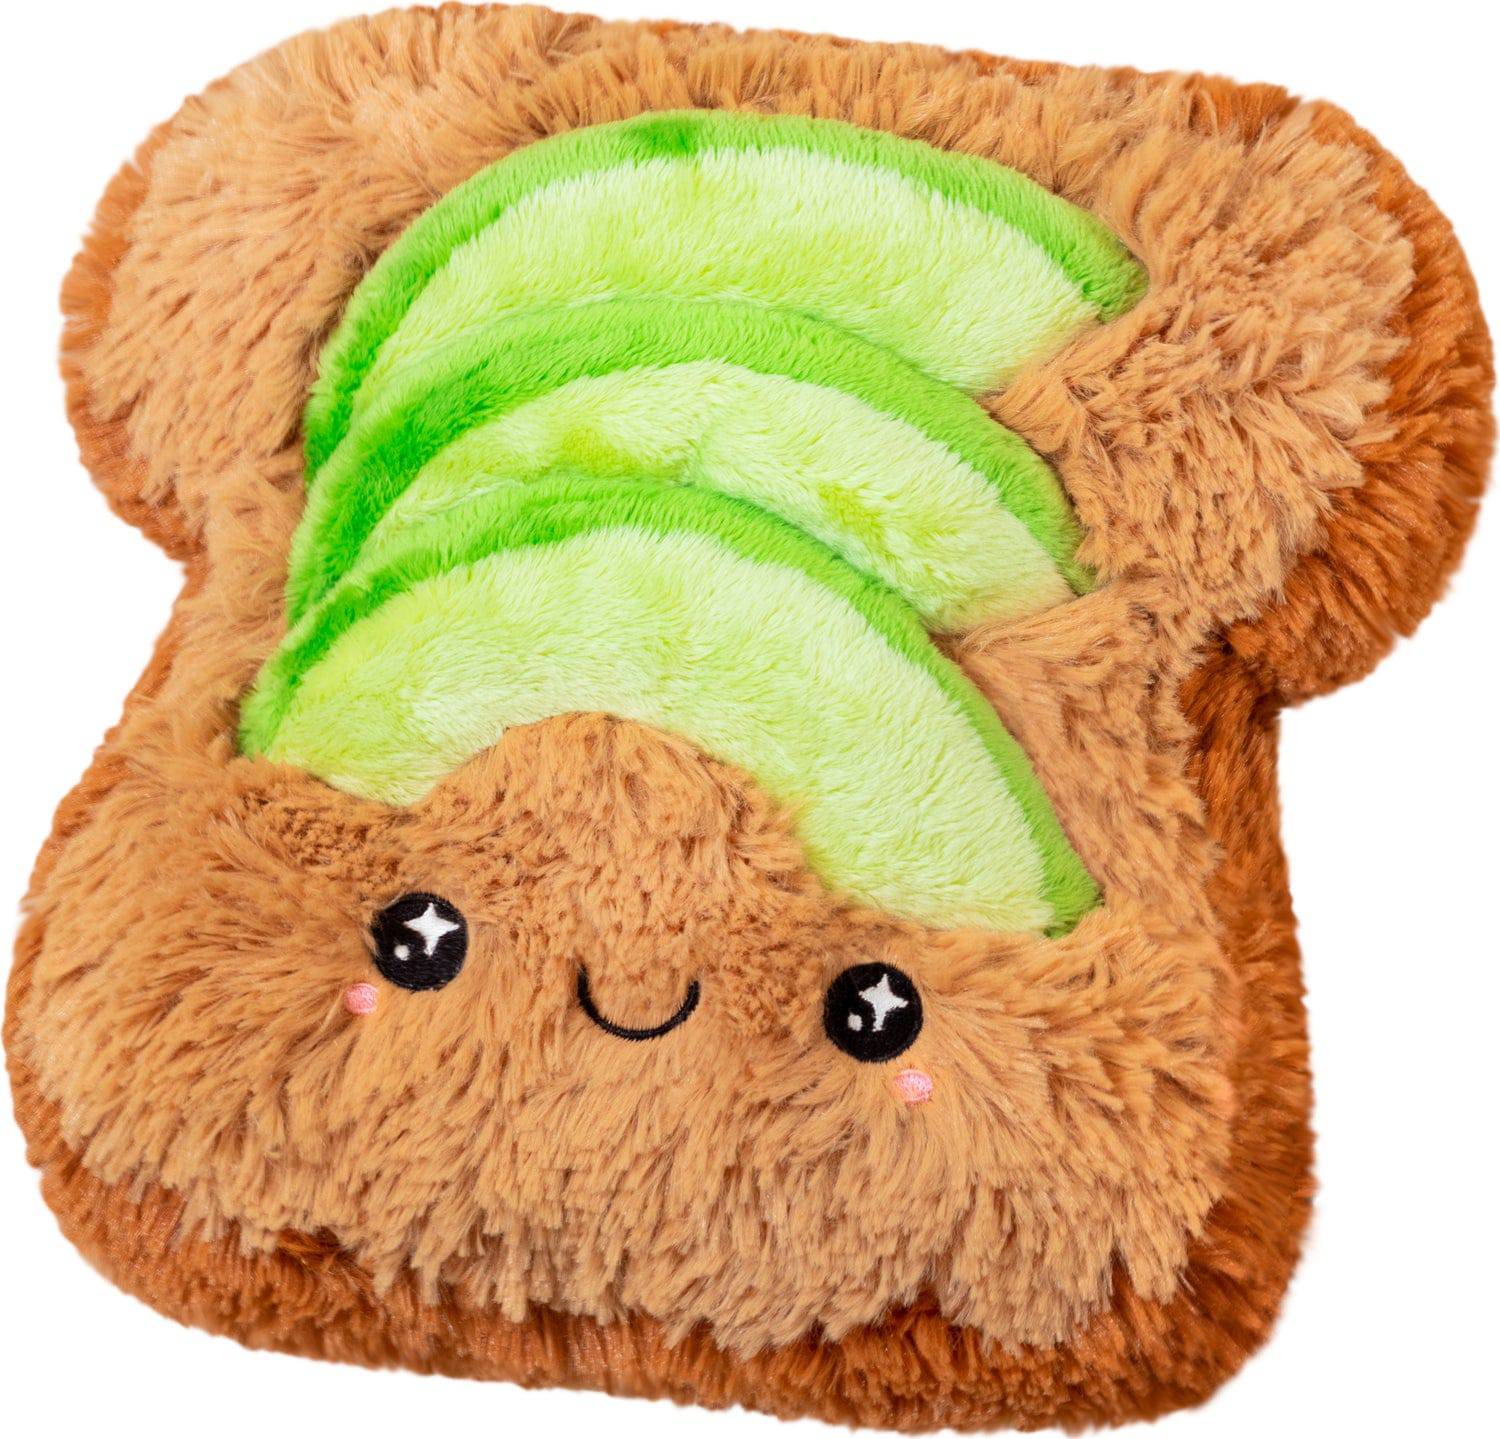 Mini Avocado Toast - A Child's Delight